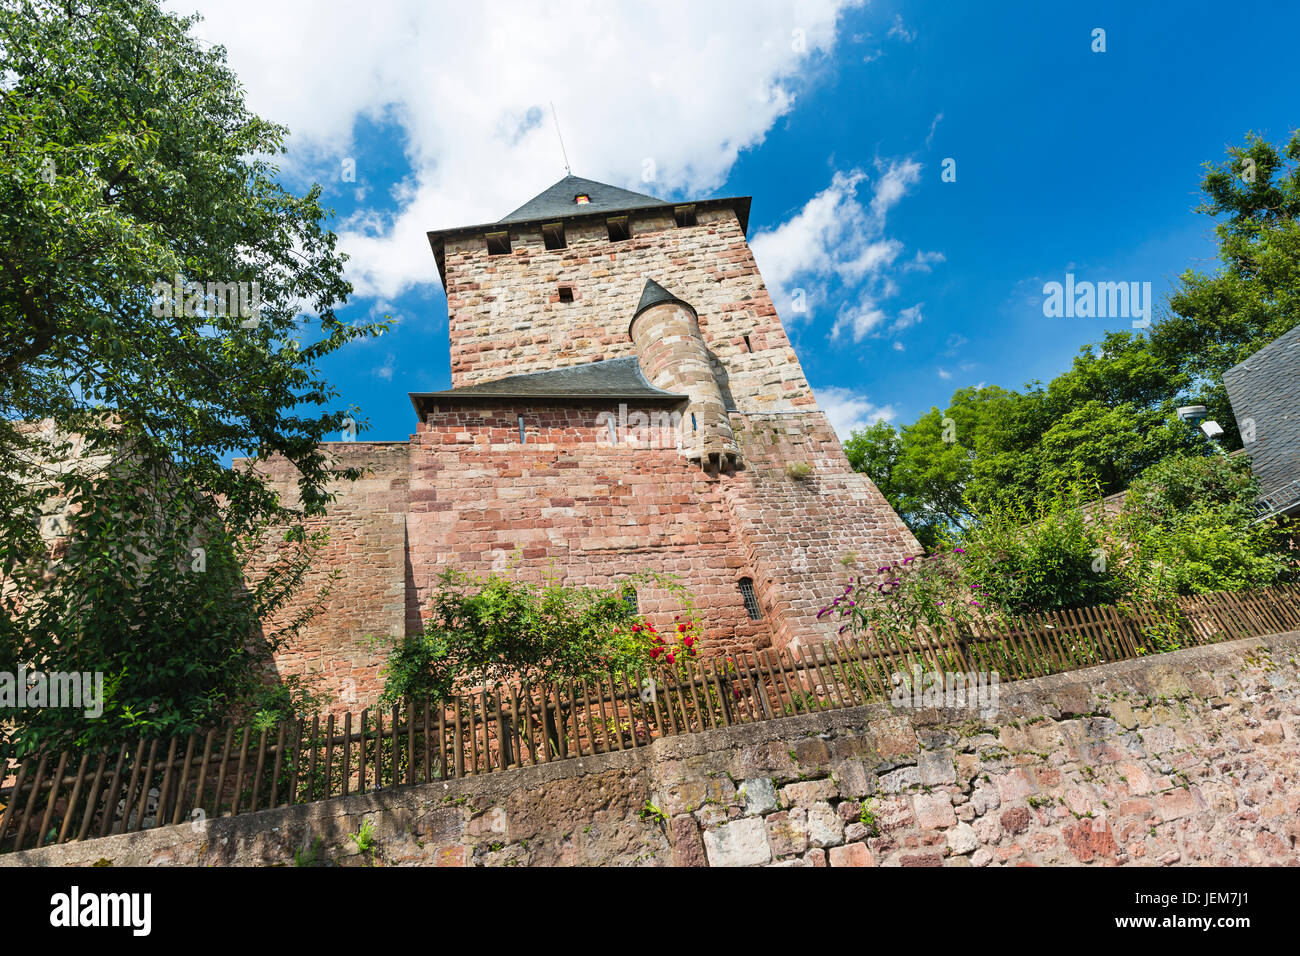 Der Wohnturm und Garten des Schlosses Burg Nideggen in der Eifel, Deutschland Stockfoto